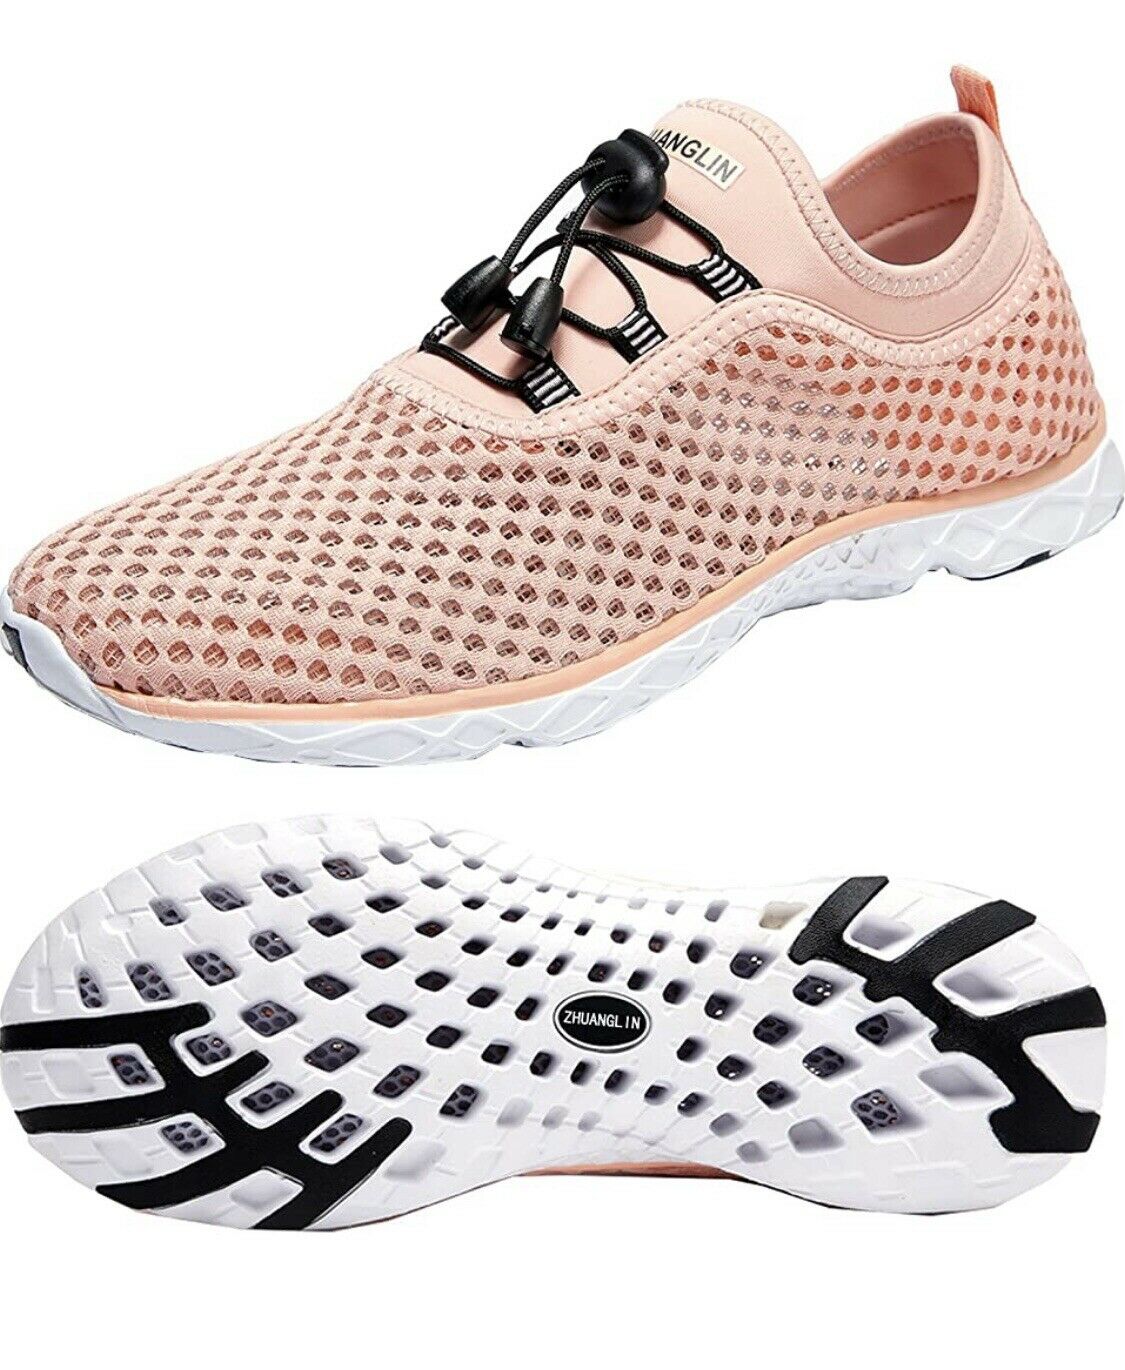 Zhuanglin Women'S Quick Drying Aqua Water Casual Walking Shoes Pink Orange Sz 7